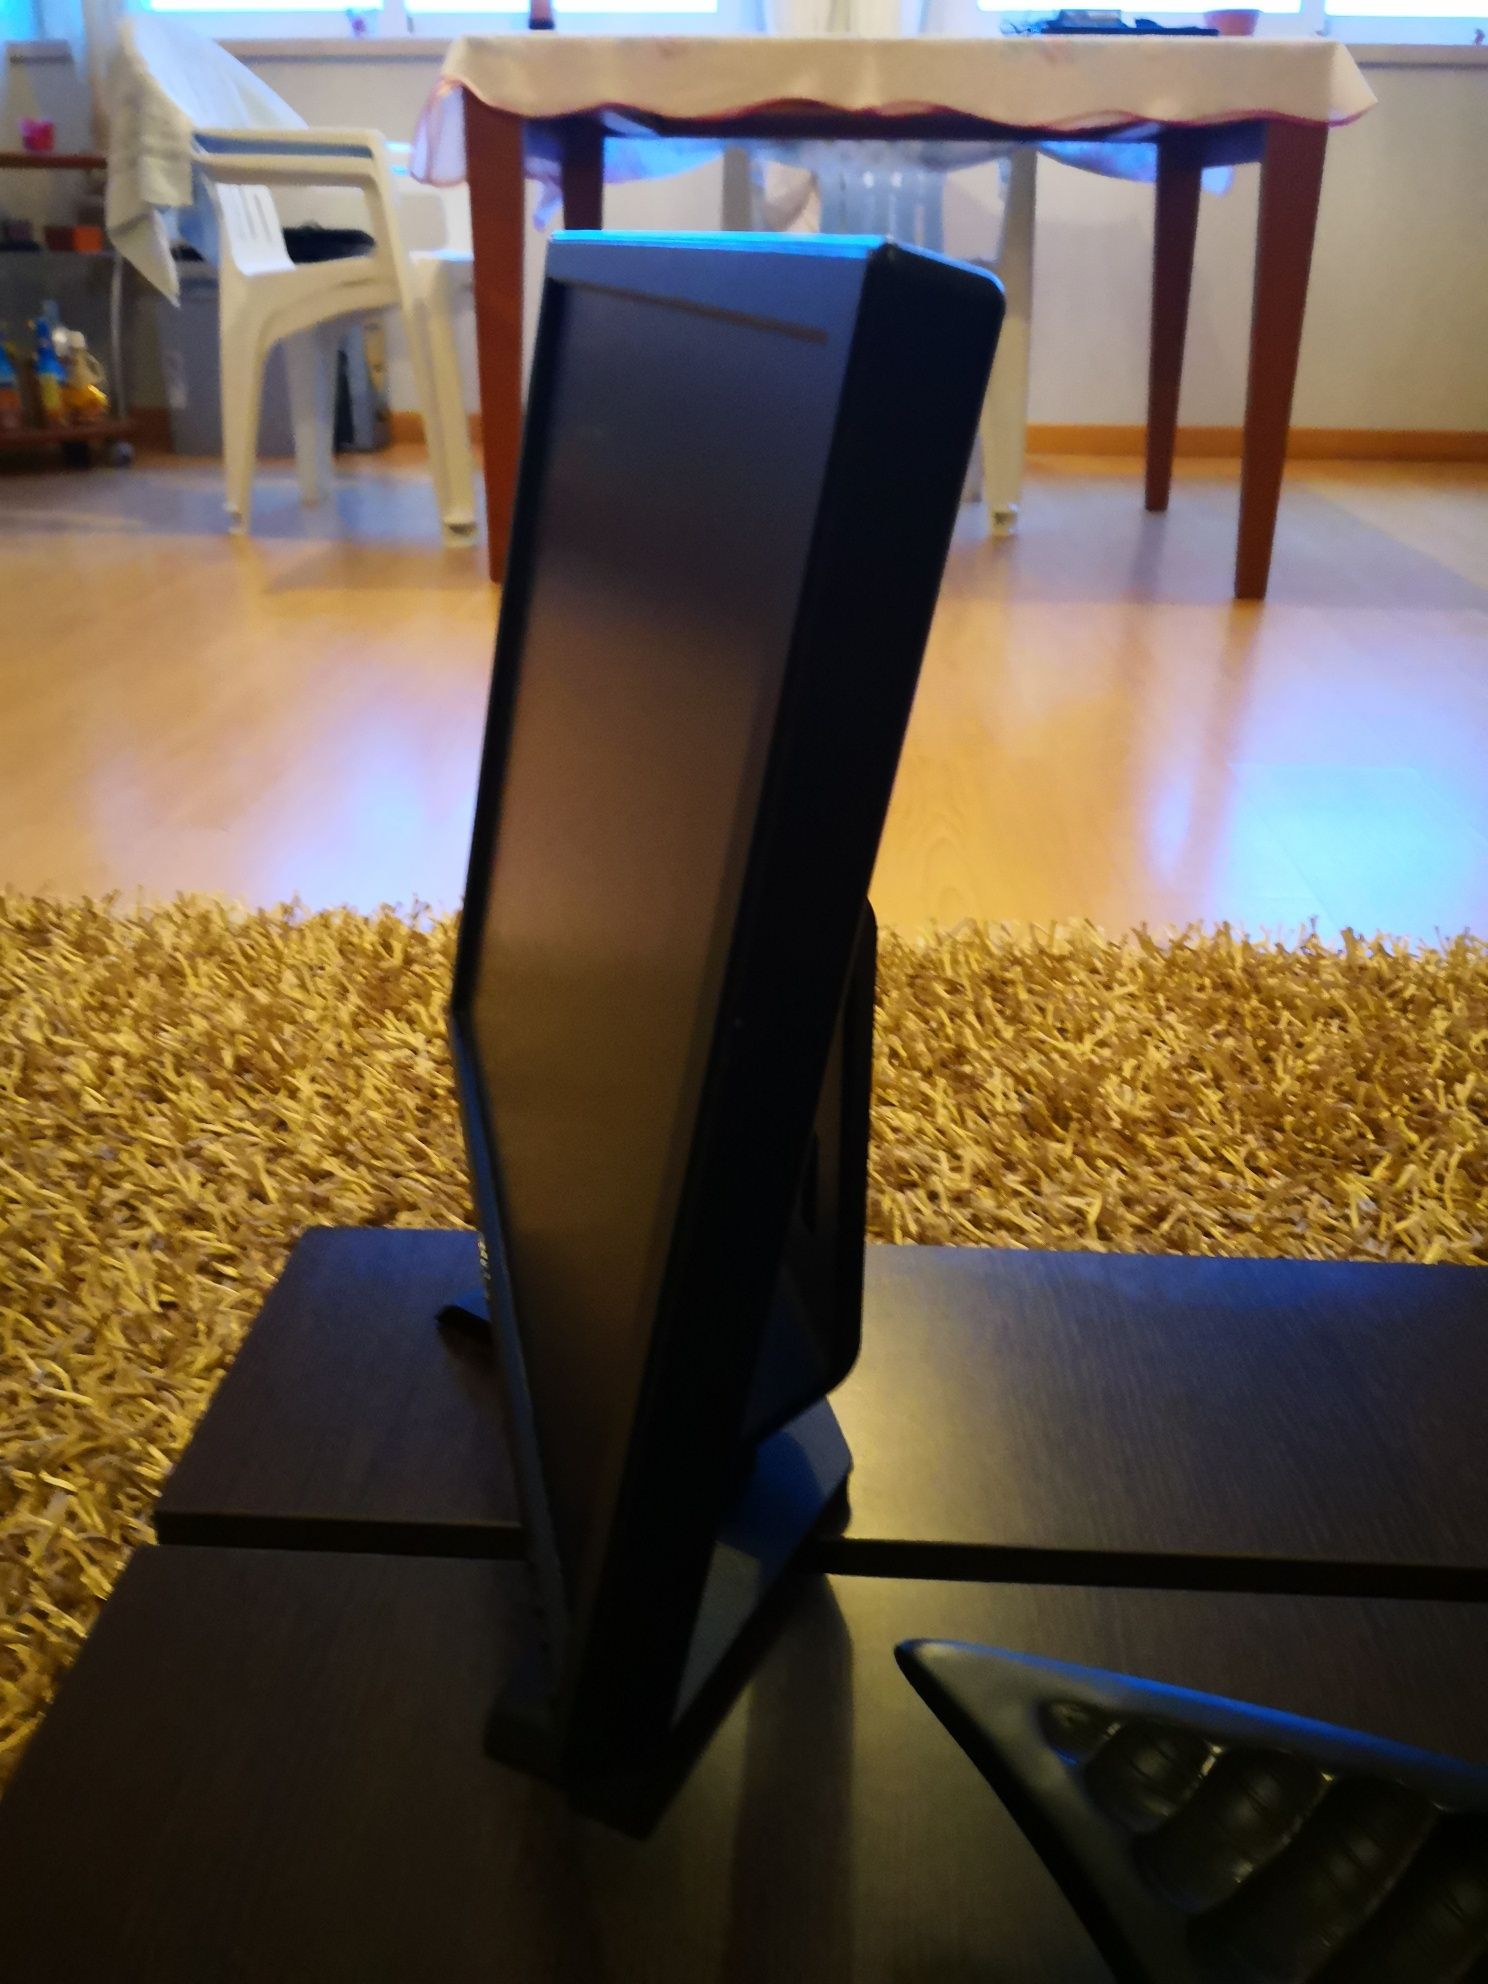 Monitor Dell 17 Polegadas